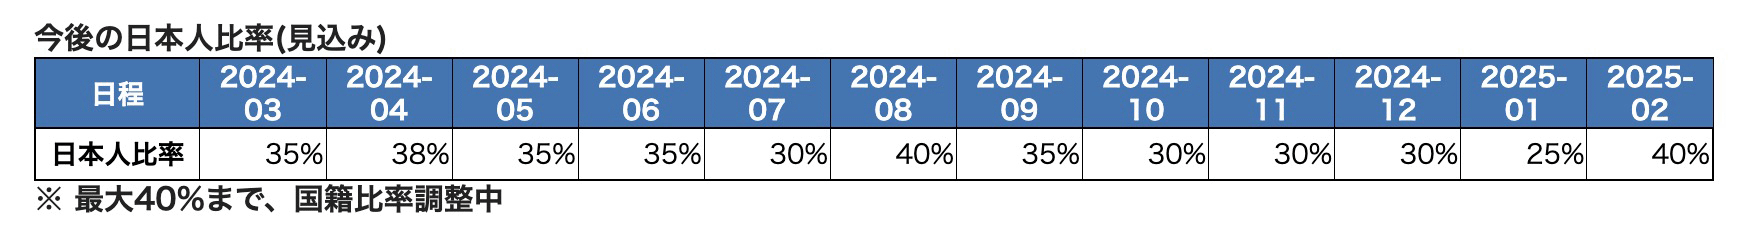 2023年~2024年の日本人比率の予想データ